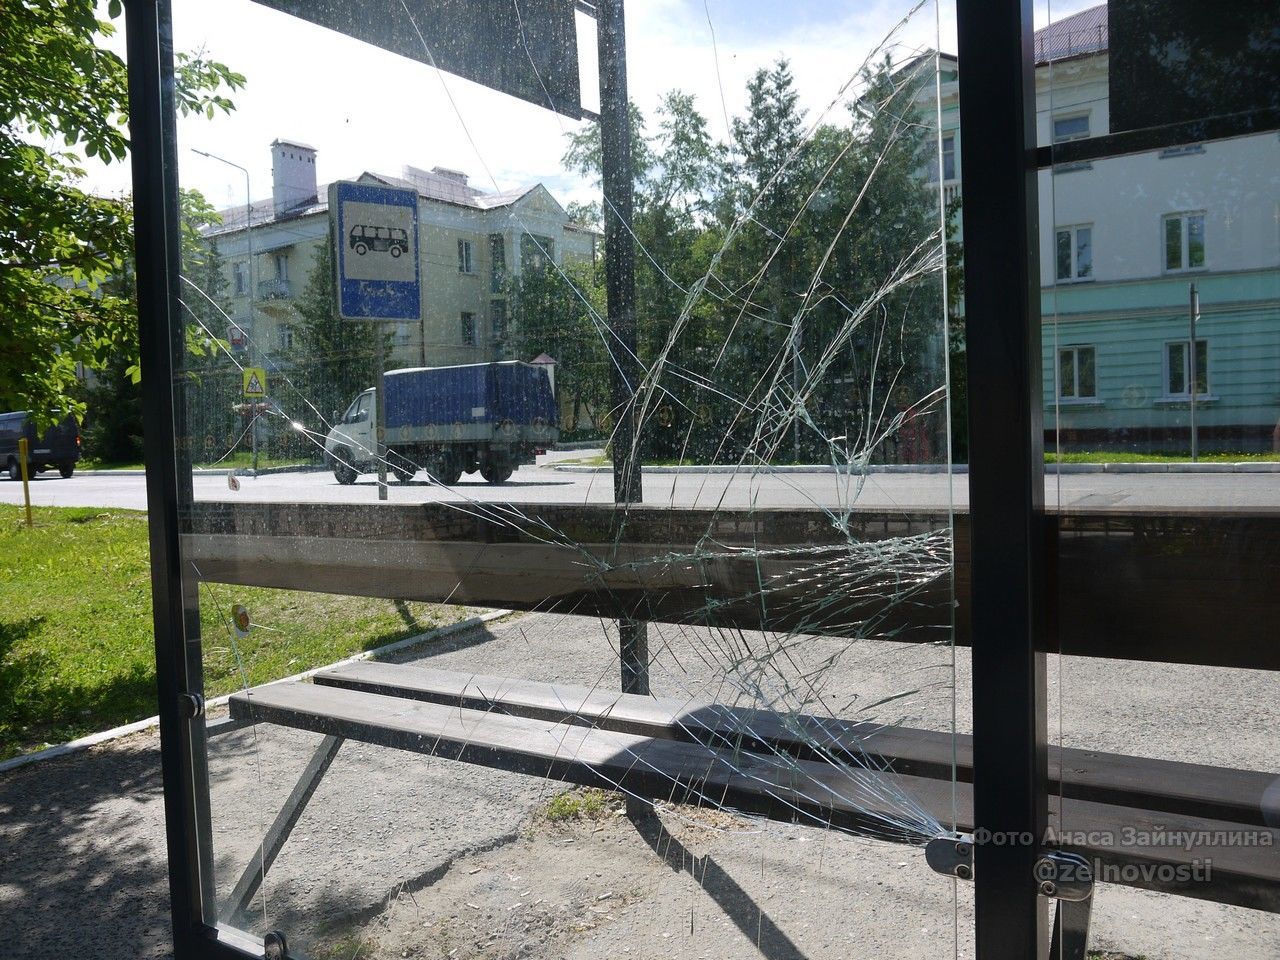 Стало известно, кто в сентябре разбил автобусную остановку по улице Ленина